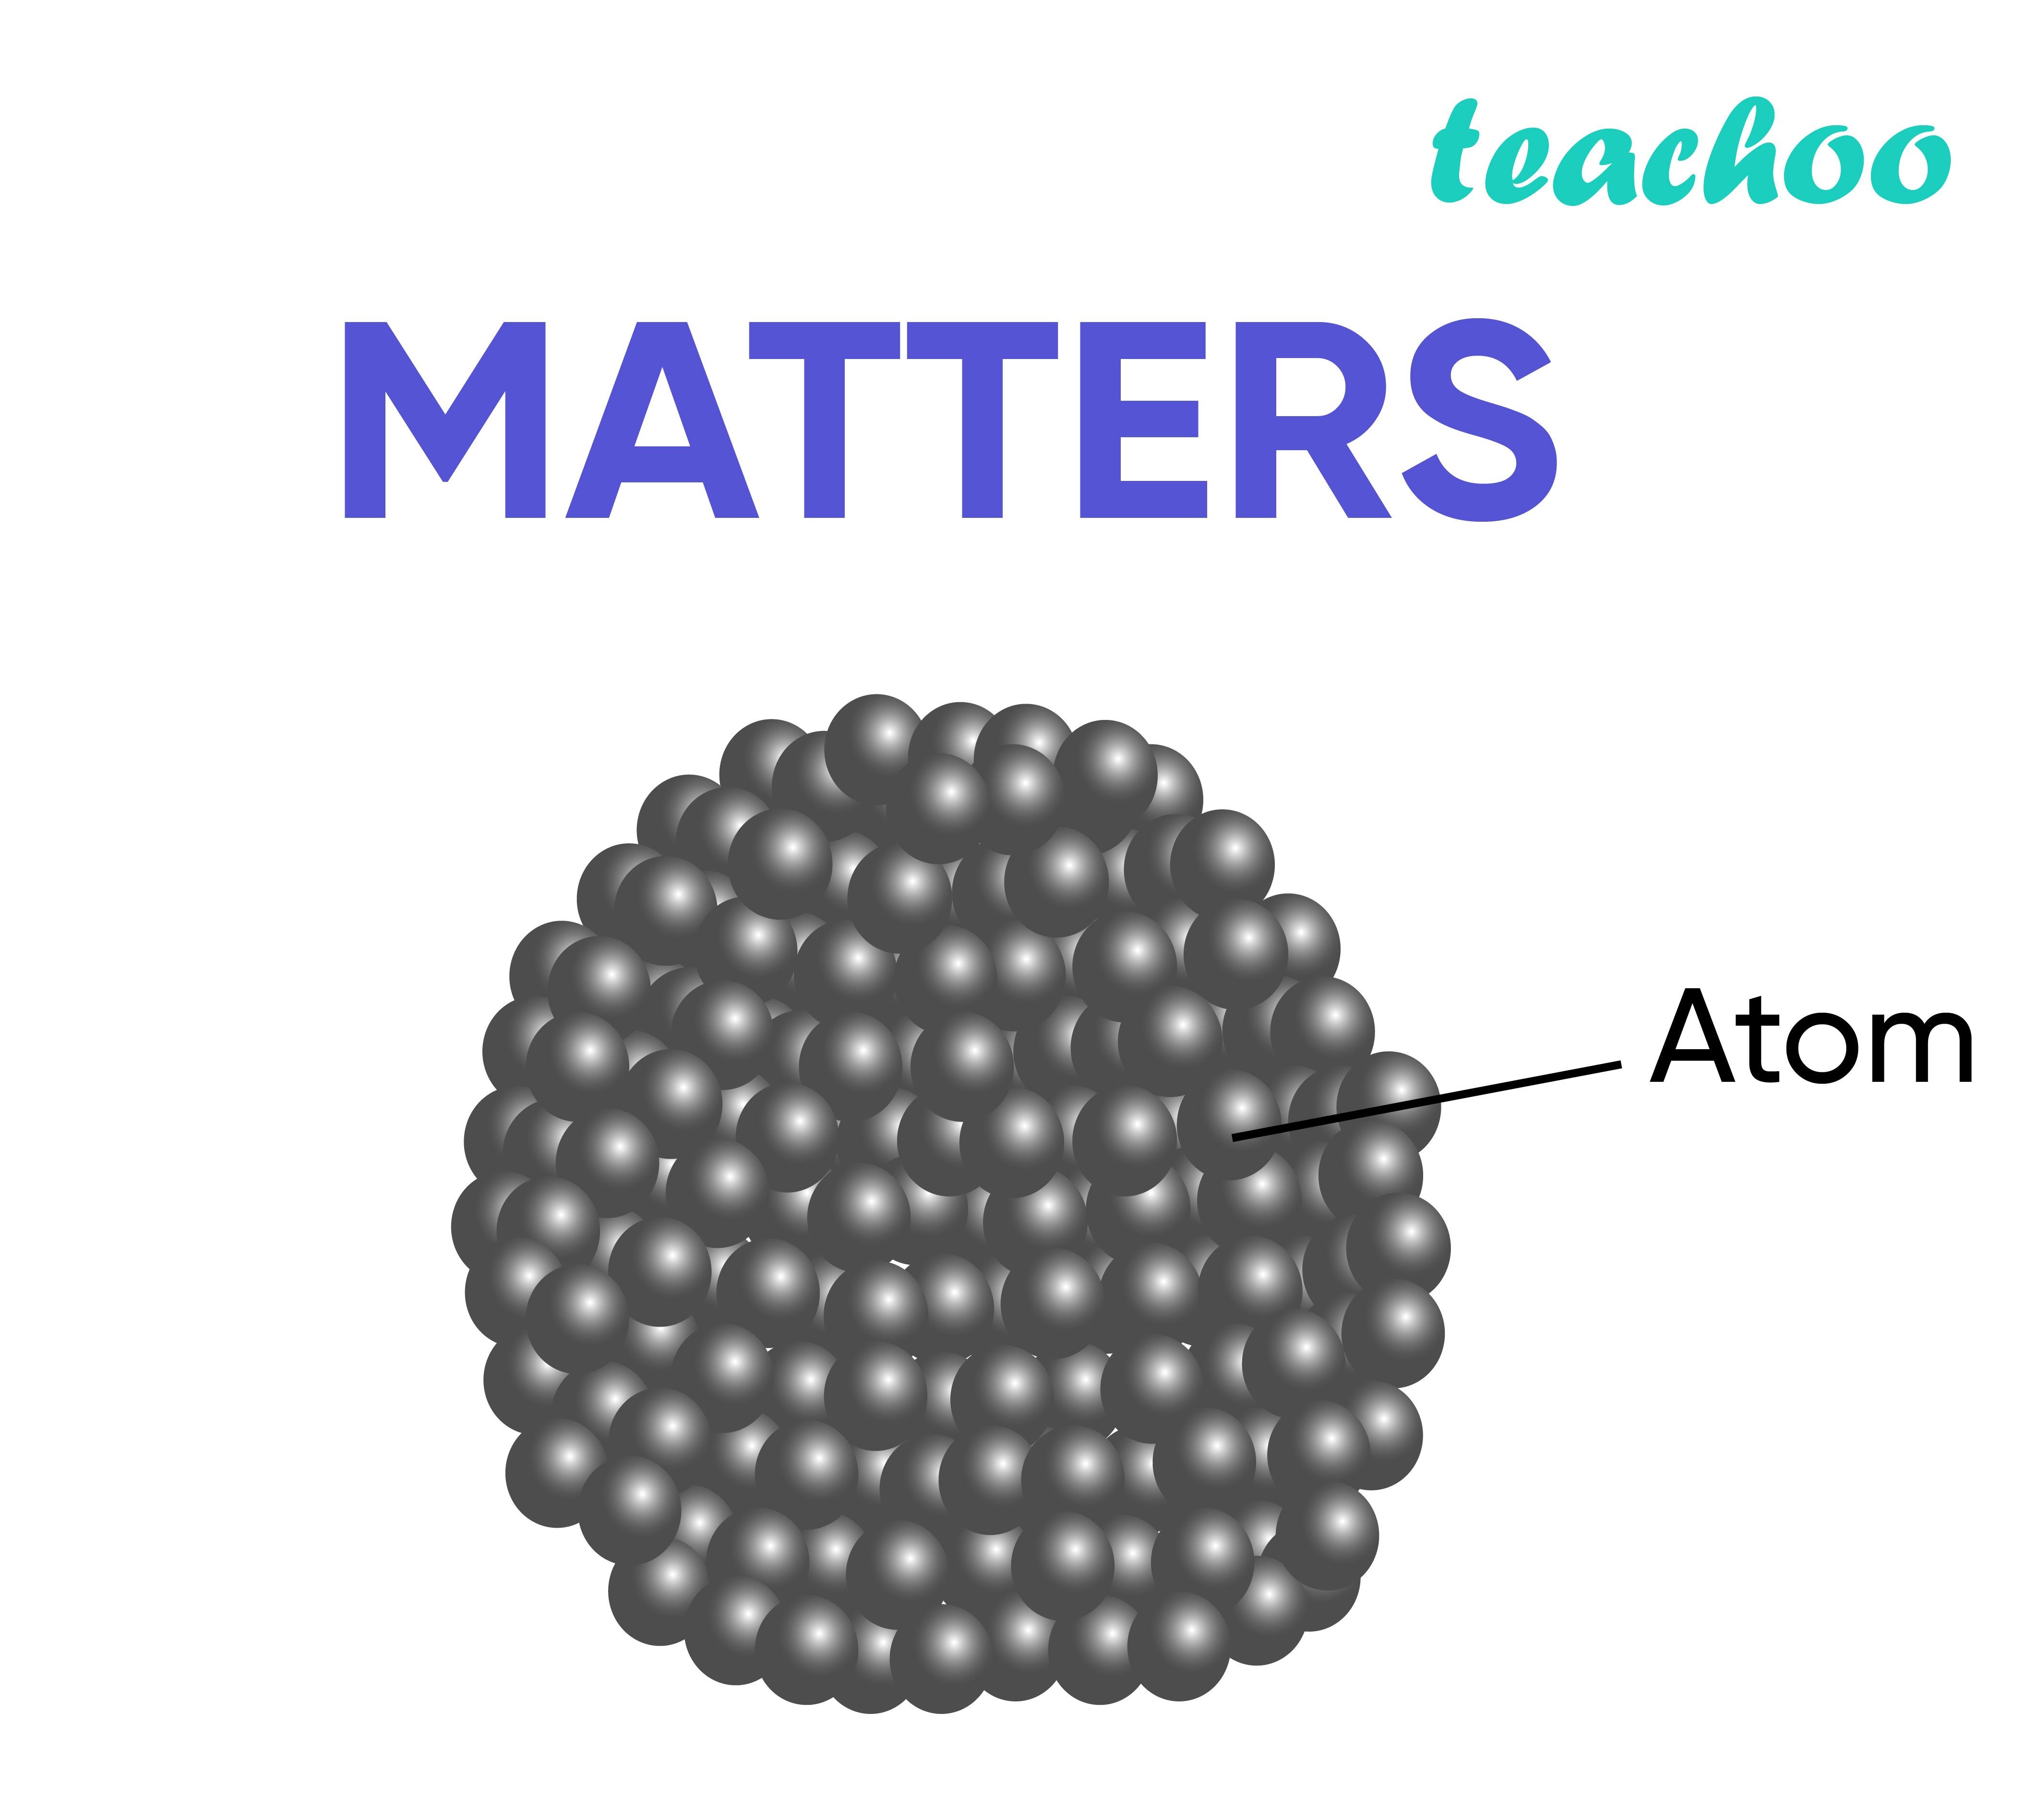 dalton atomic theory model